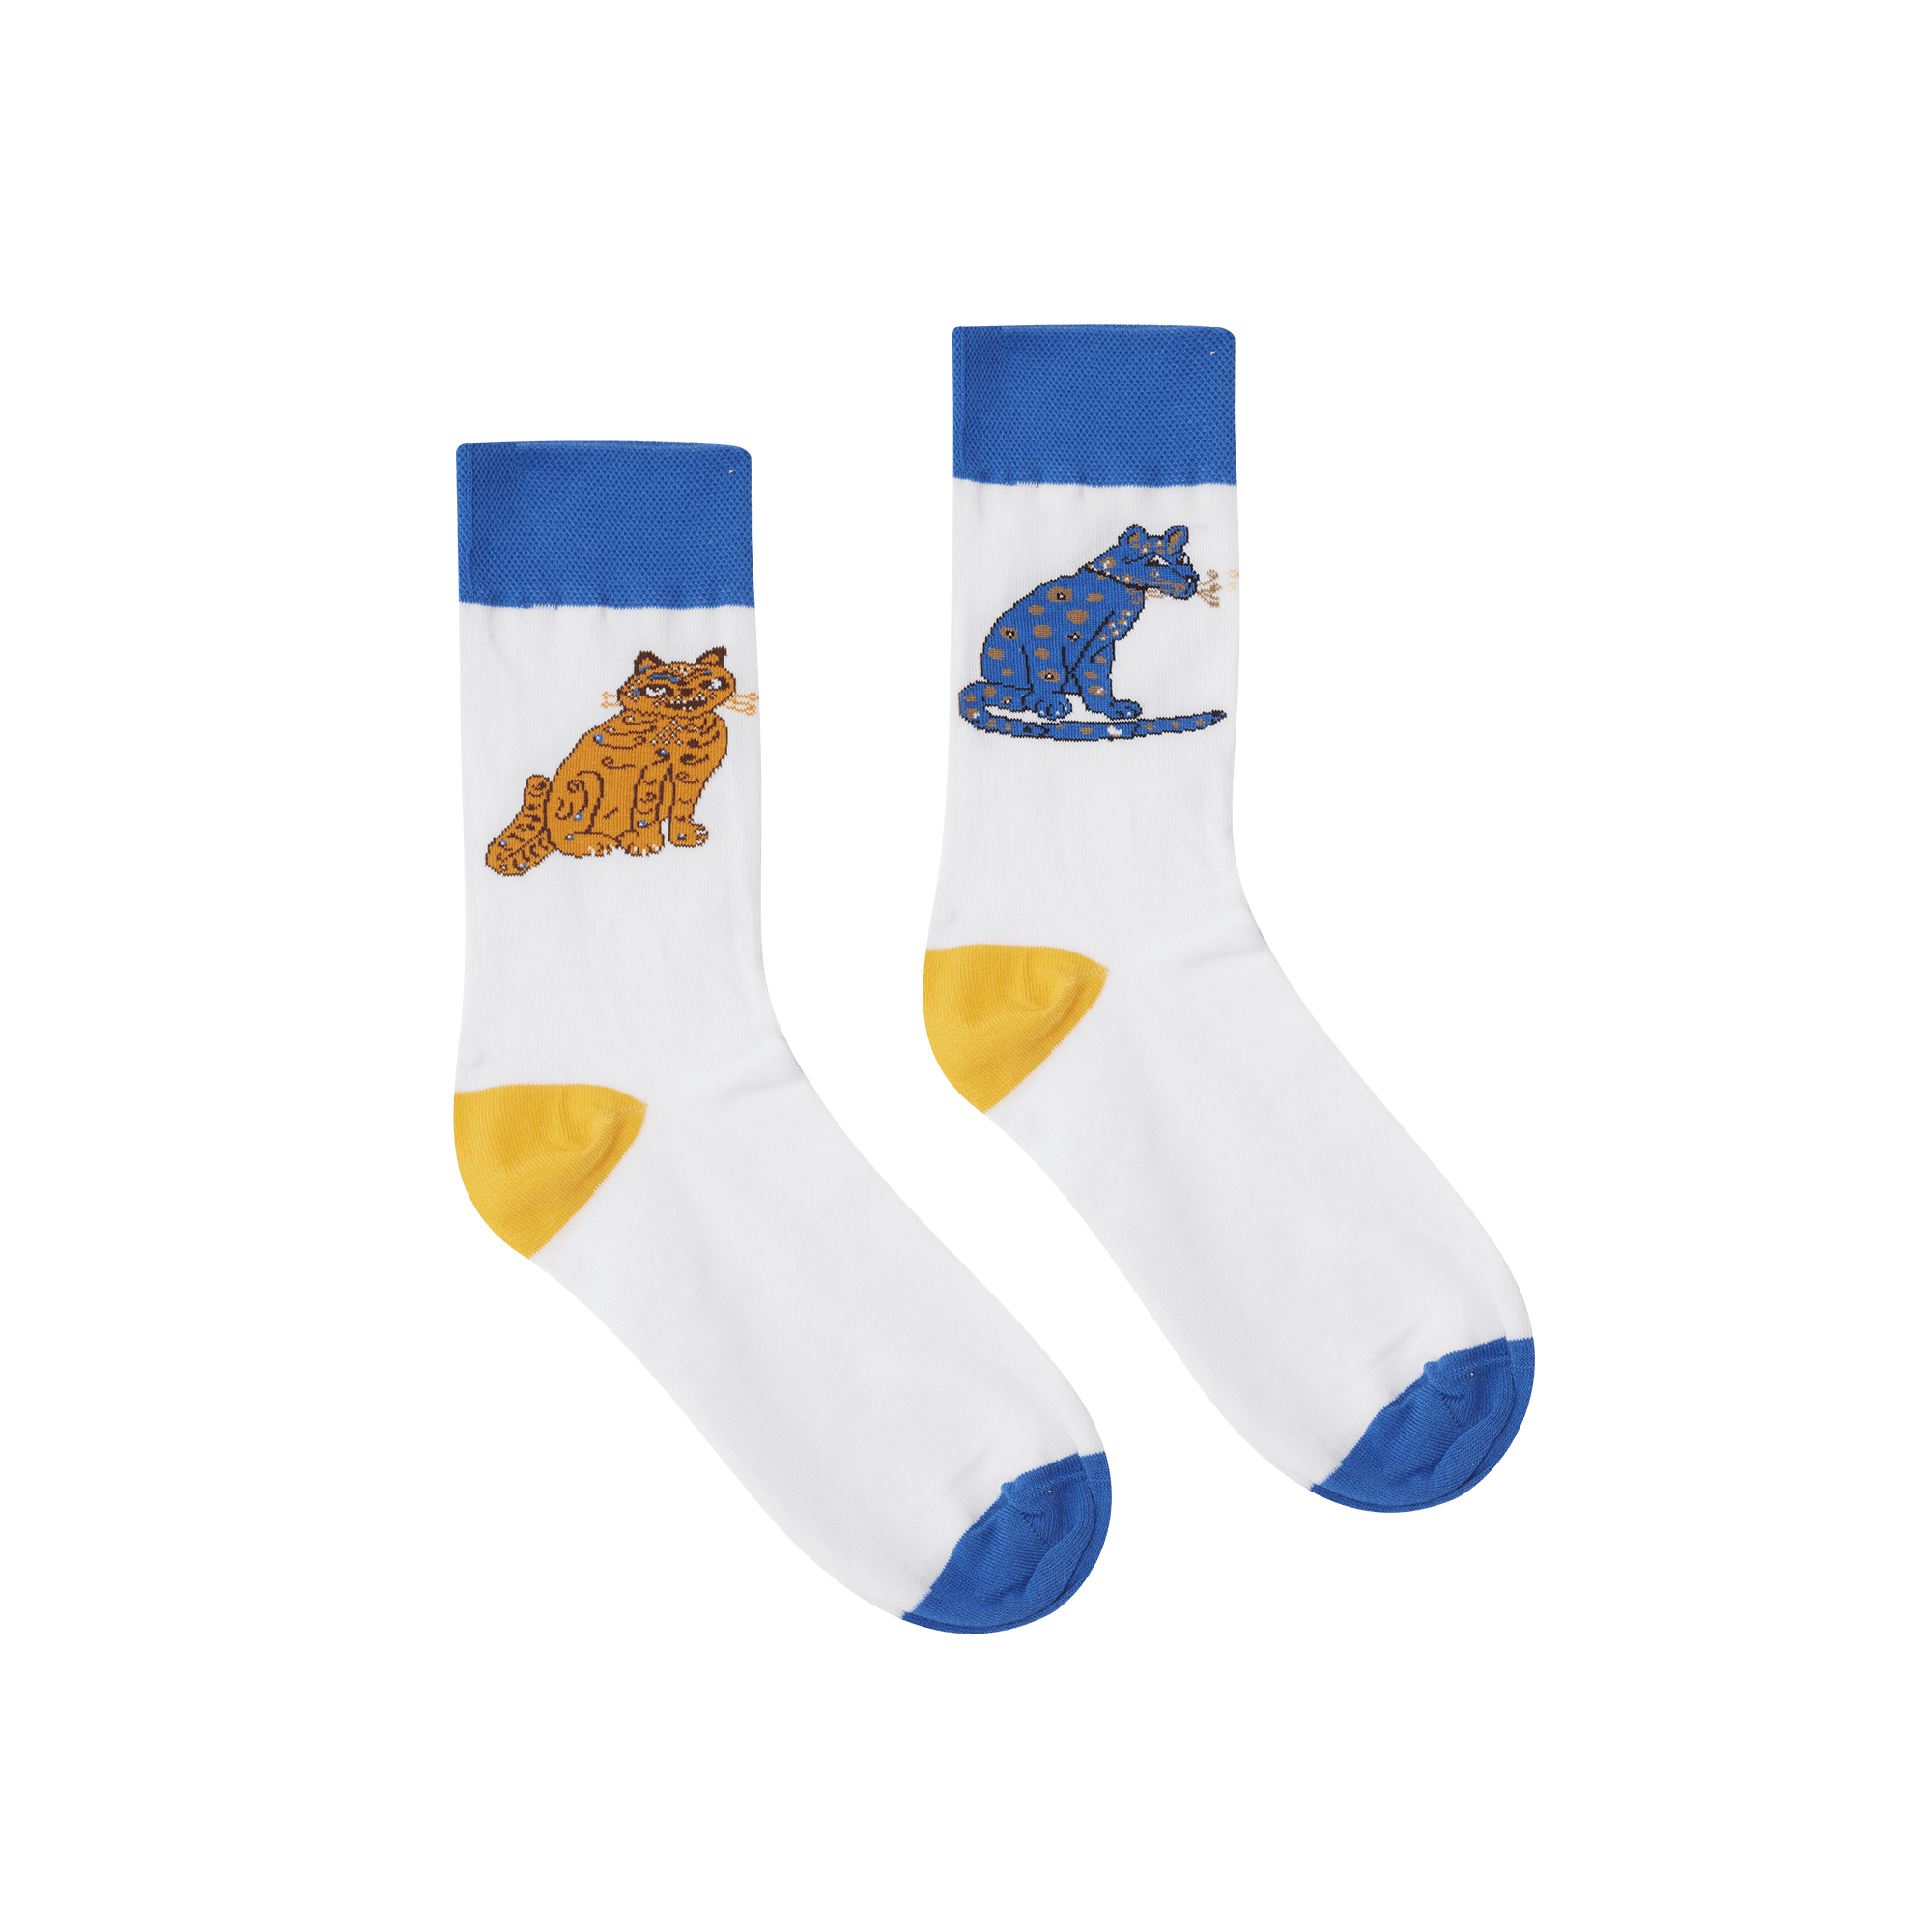 ABBA Cats socks